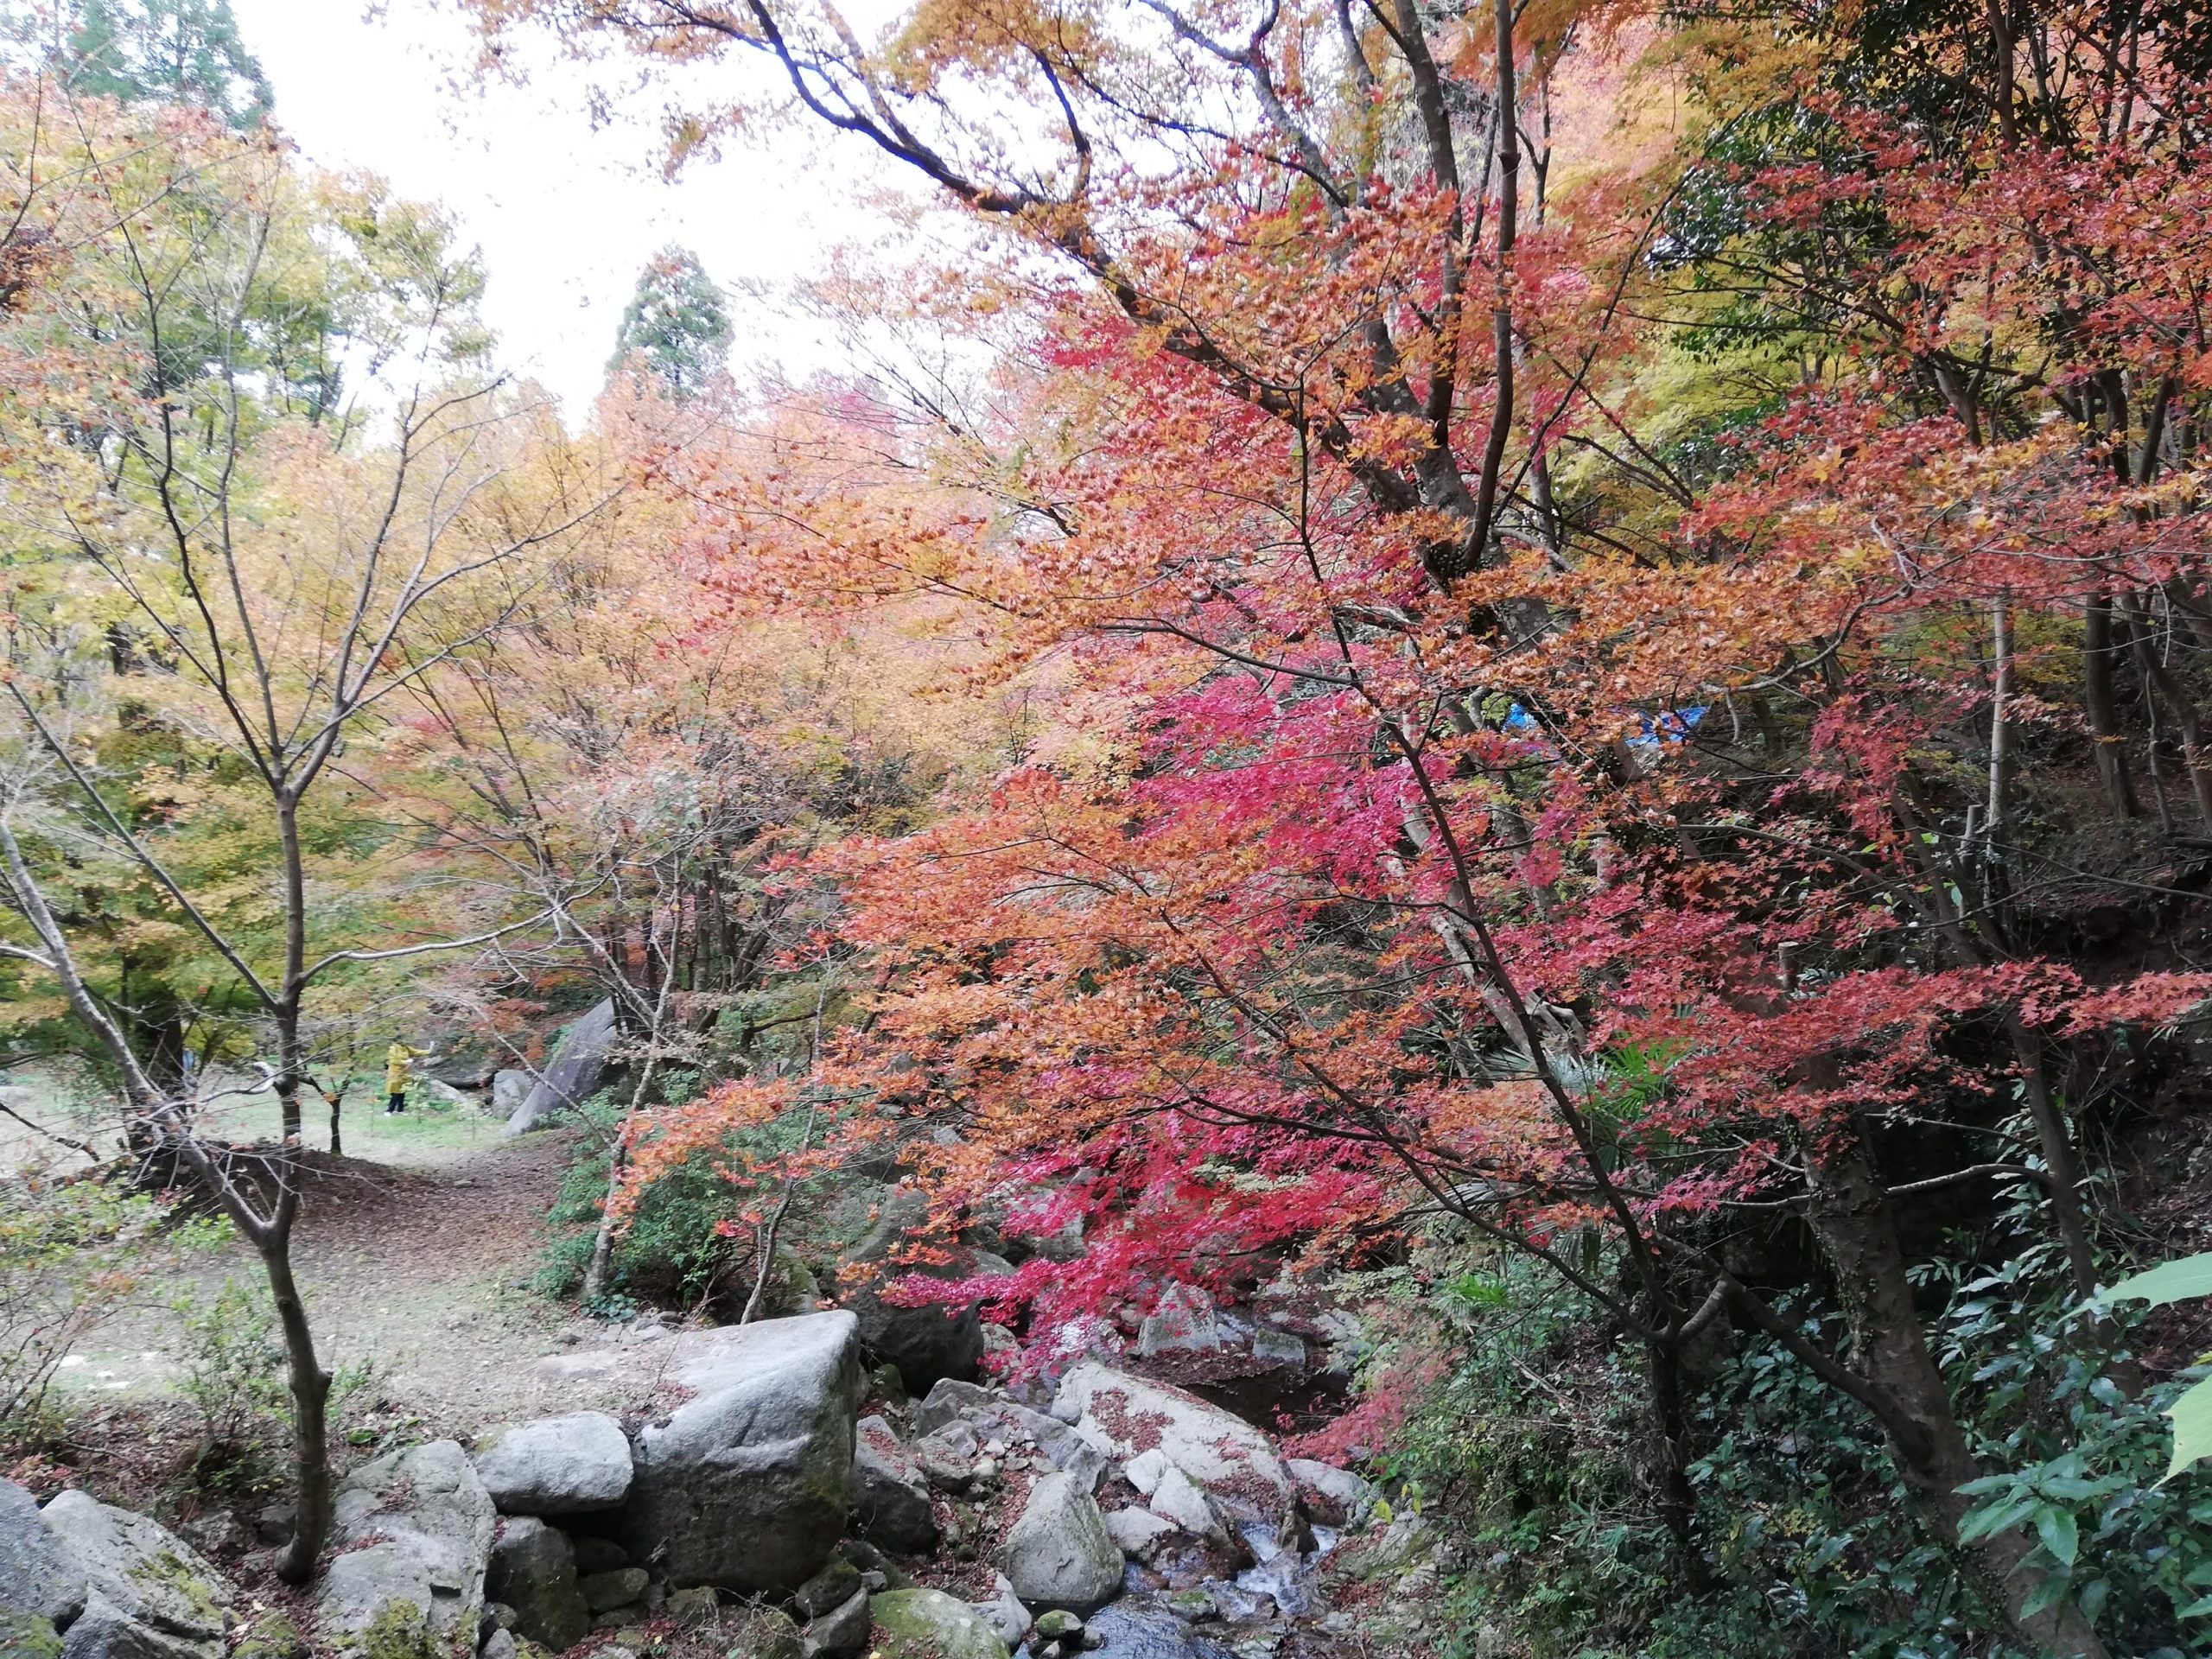 佐賀の紅葉を見に行く旅その2漆塗りの滑らかなテーブルに映り込んだ美しい紅葉の風景。